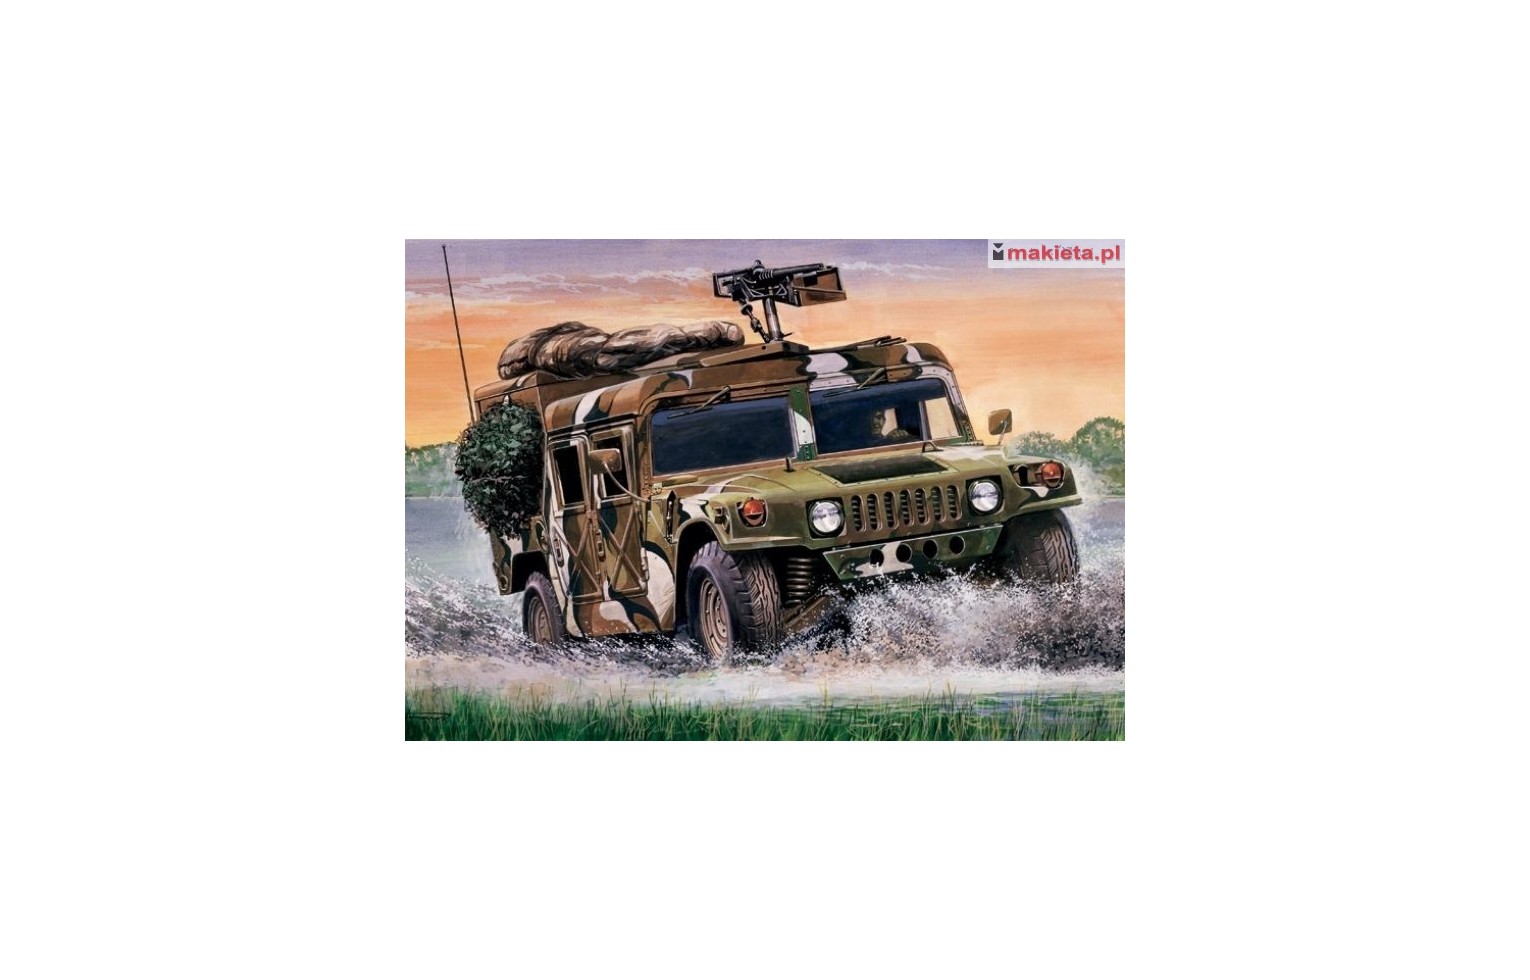 Italeri 0249, Hummer Desert patrol, skala 1:35